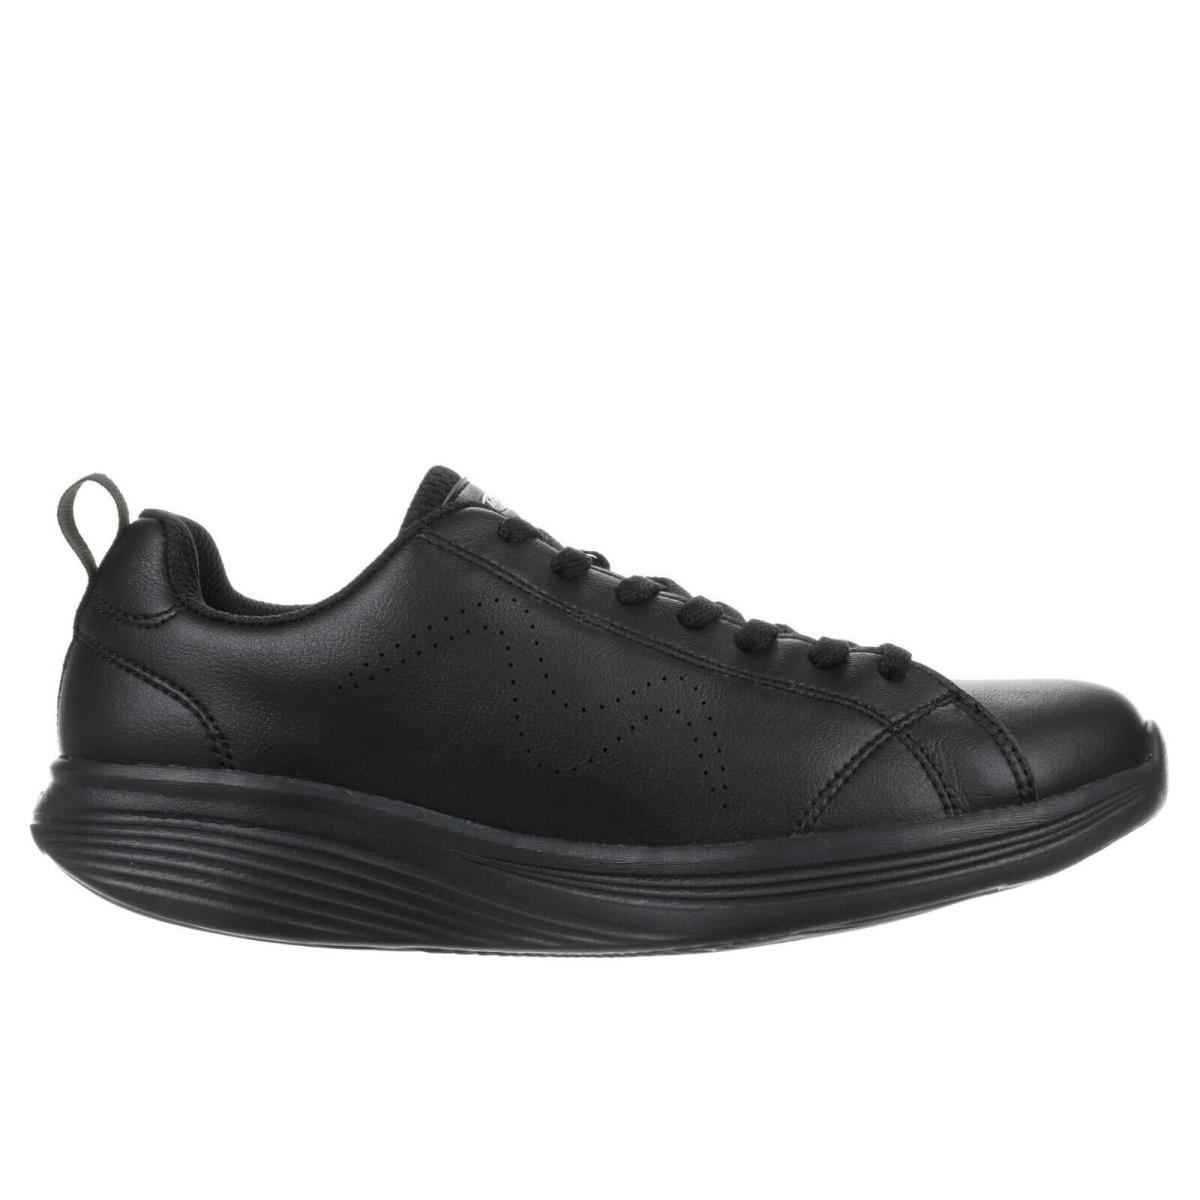 MBT shoes REN - BLACK/BLACK-702758-257L 2